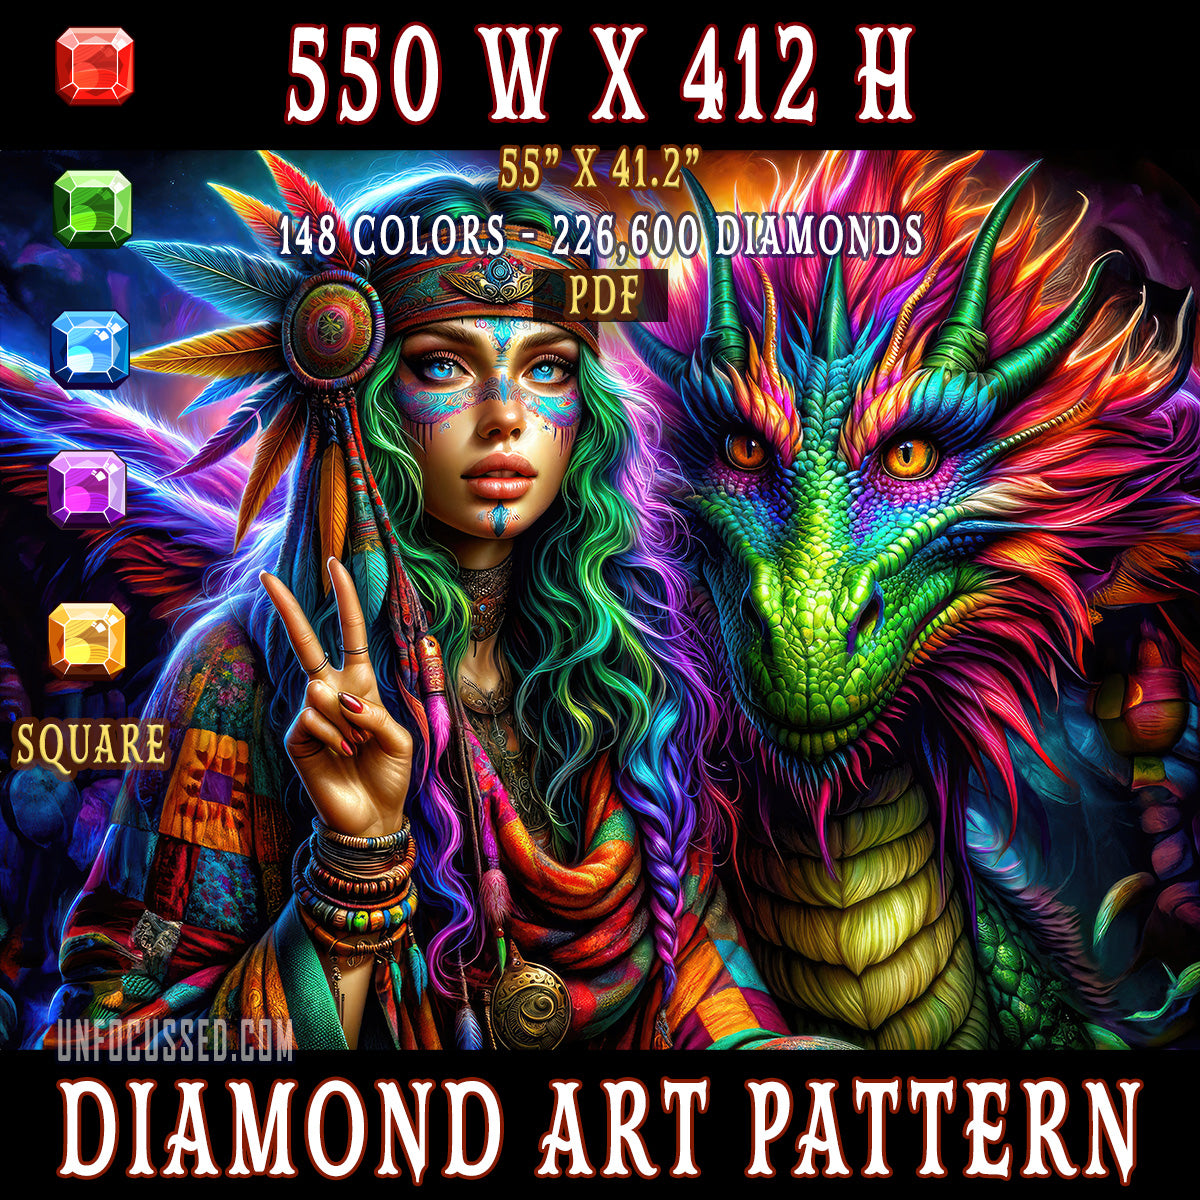 The Dragon's Bohemian Guardian Diamond Art Pattern